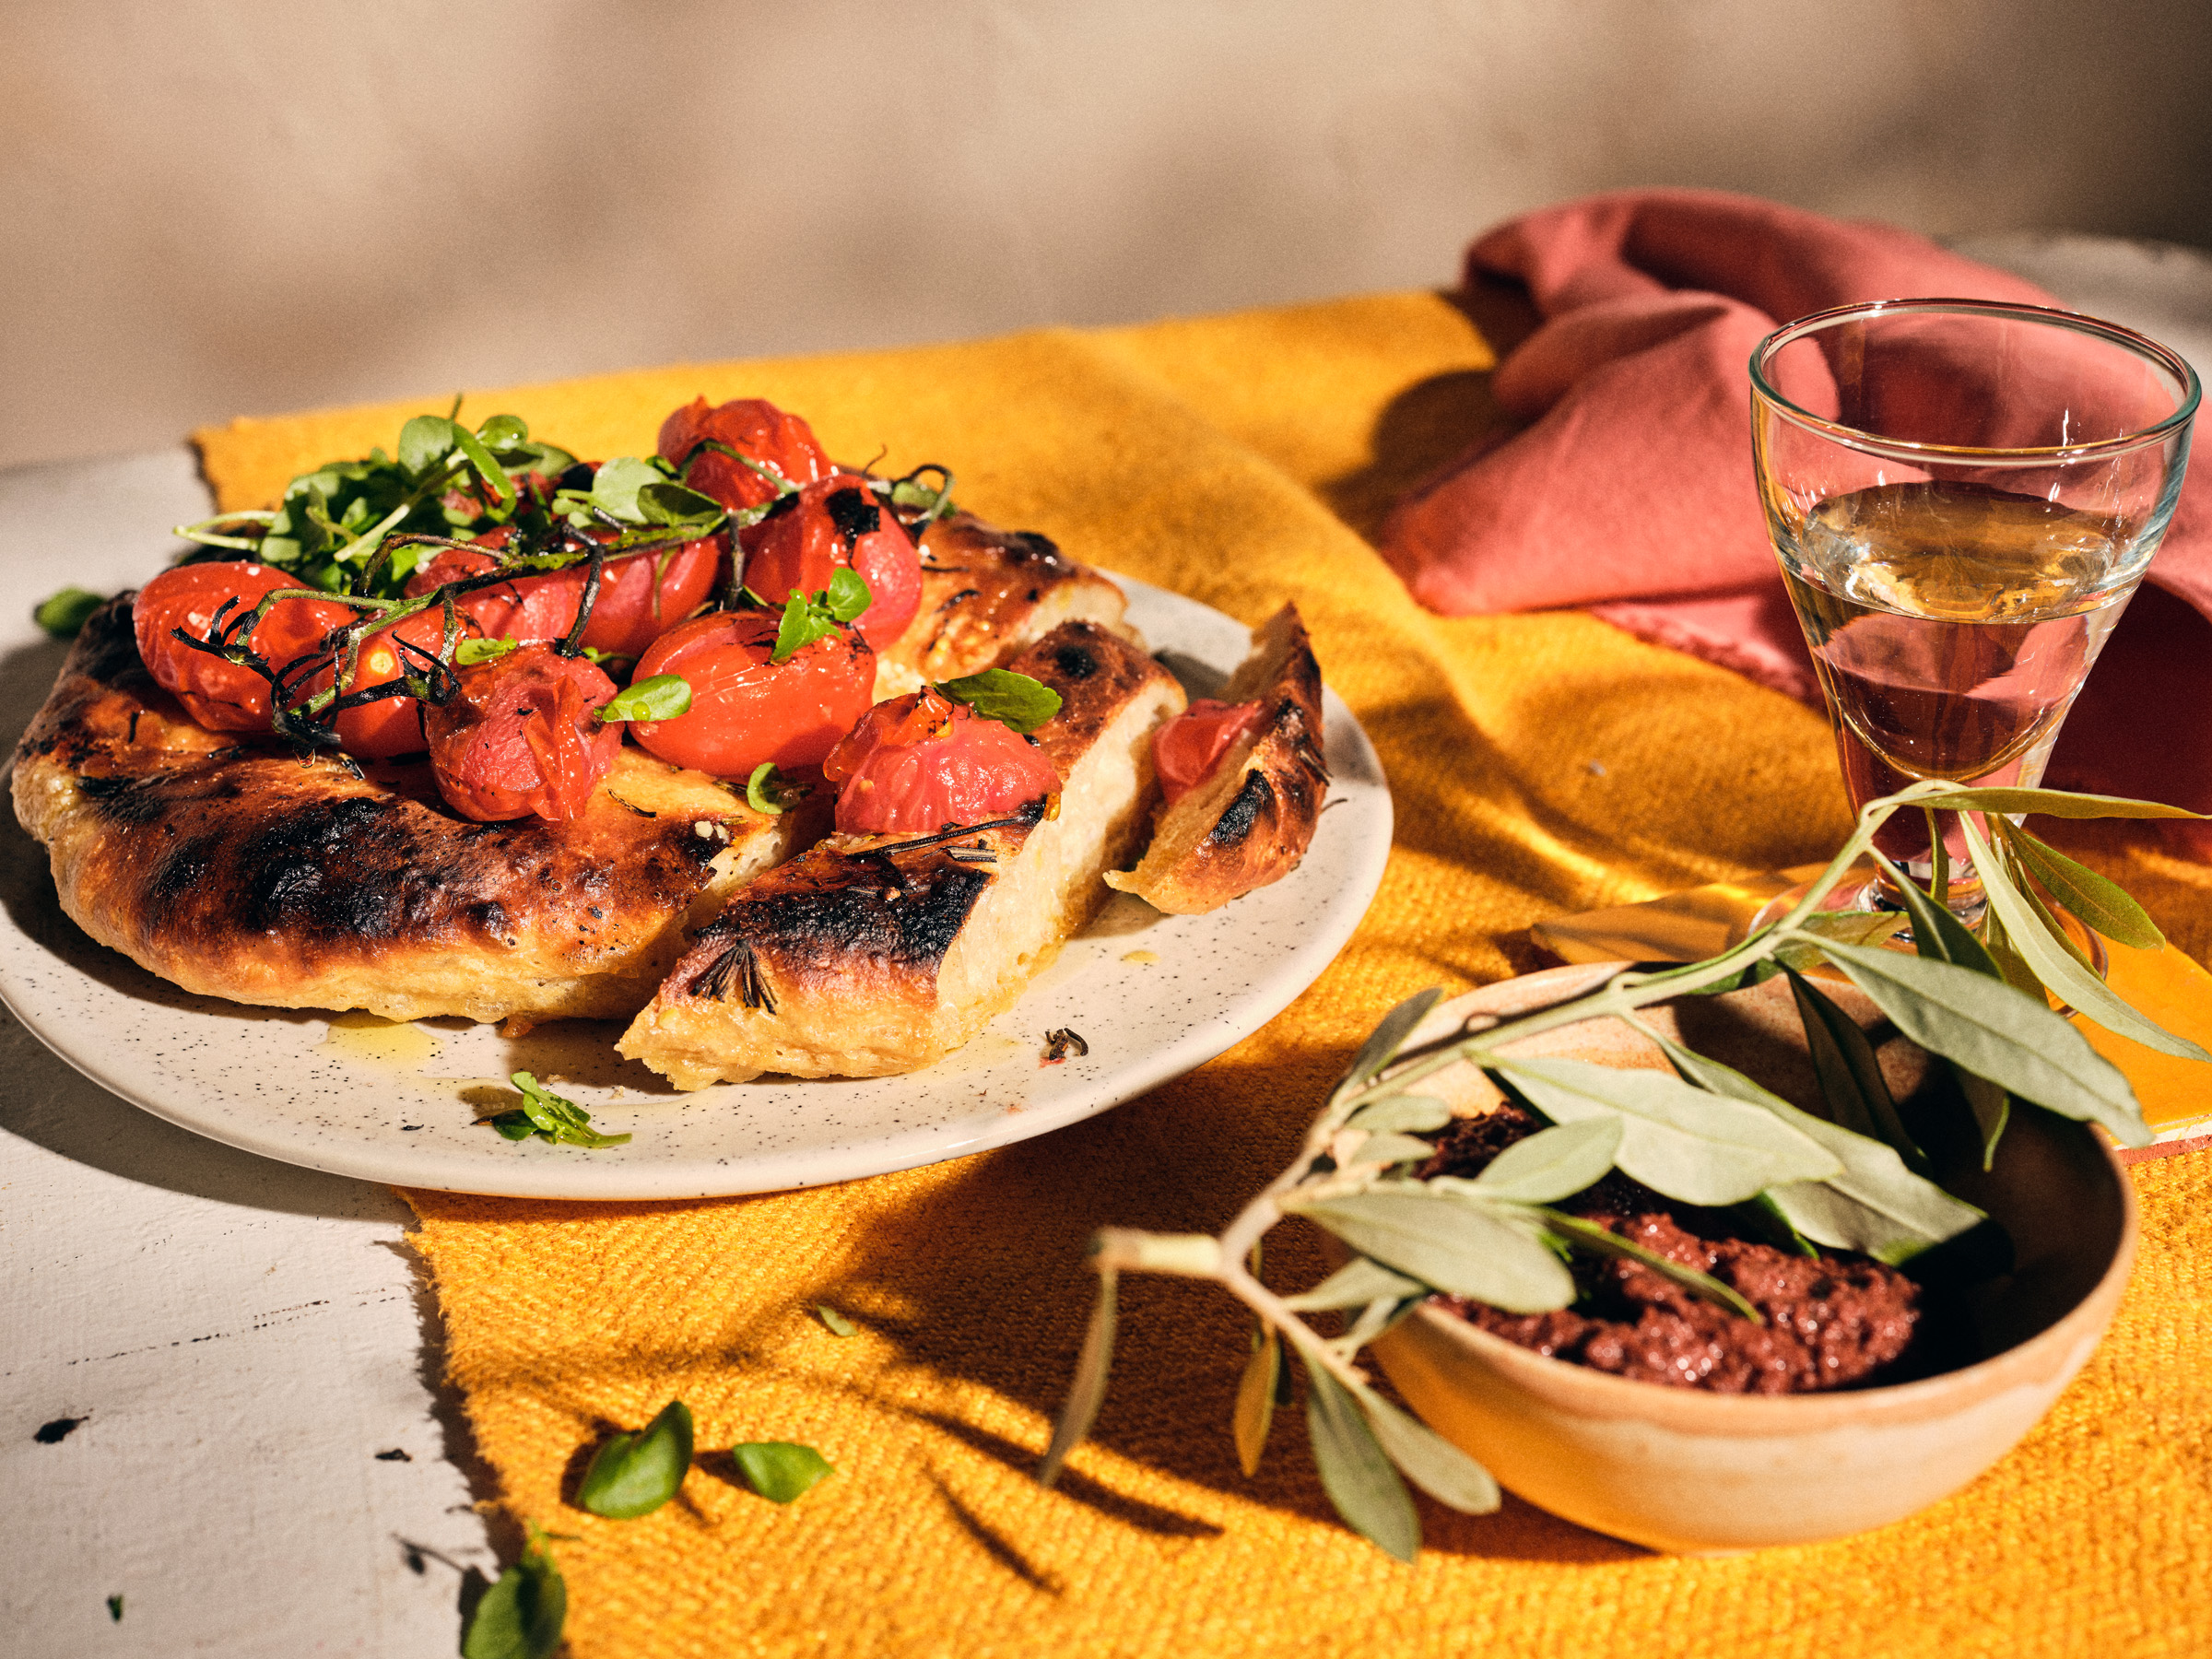 Halbtotale von TASTE APPEAL– Rezept Tomaten-Pfannenbrot mit Burned-Tomatos und Kresse, im Vordergrund Pesto mit Olivenzweig